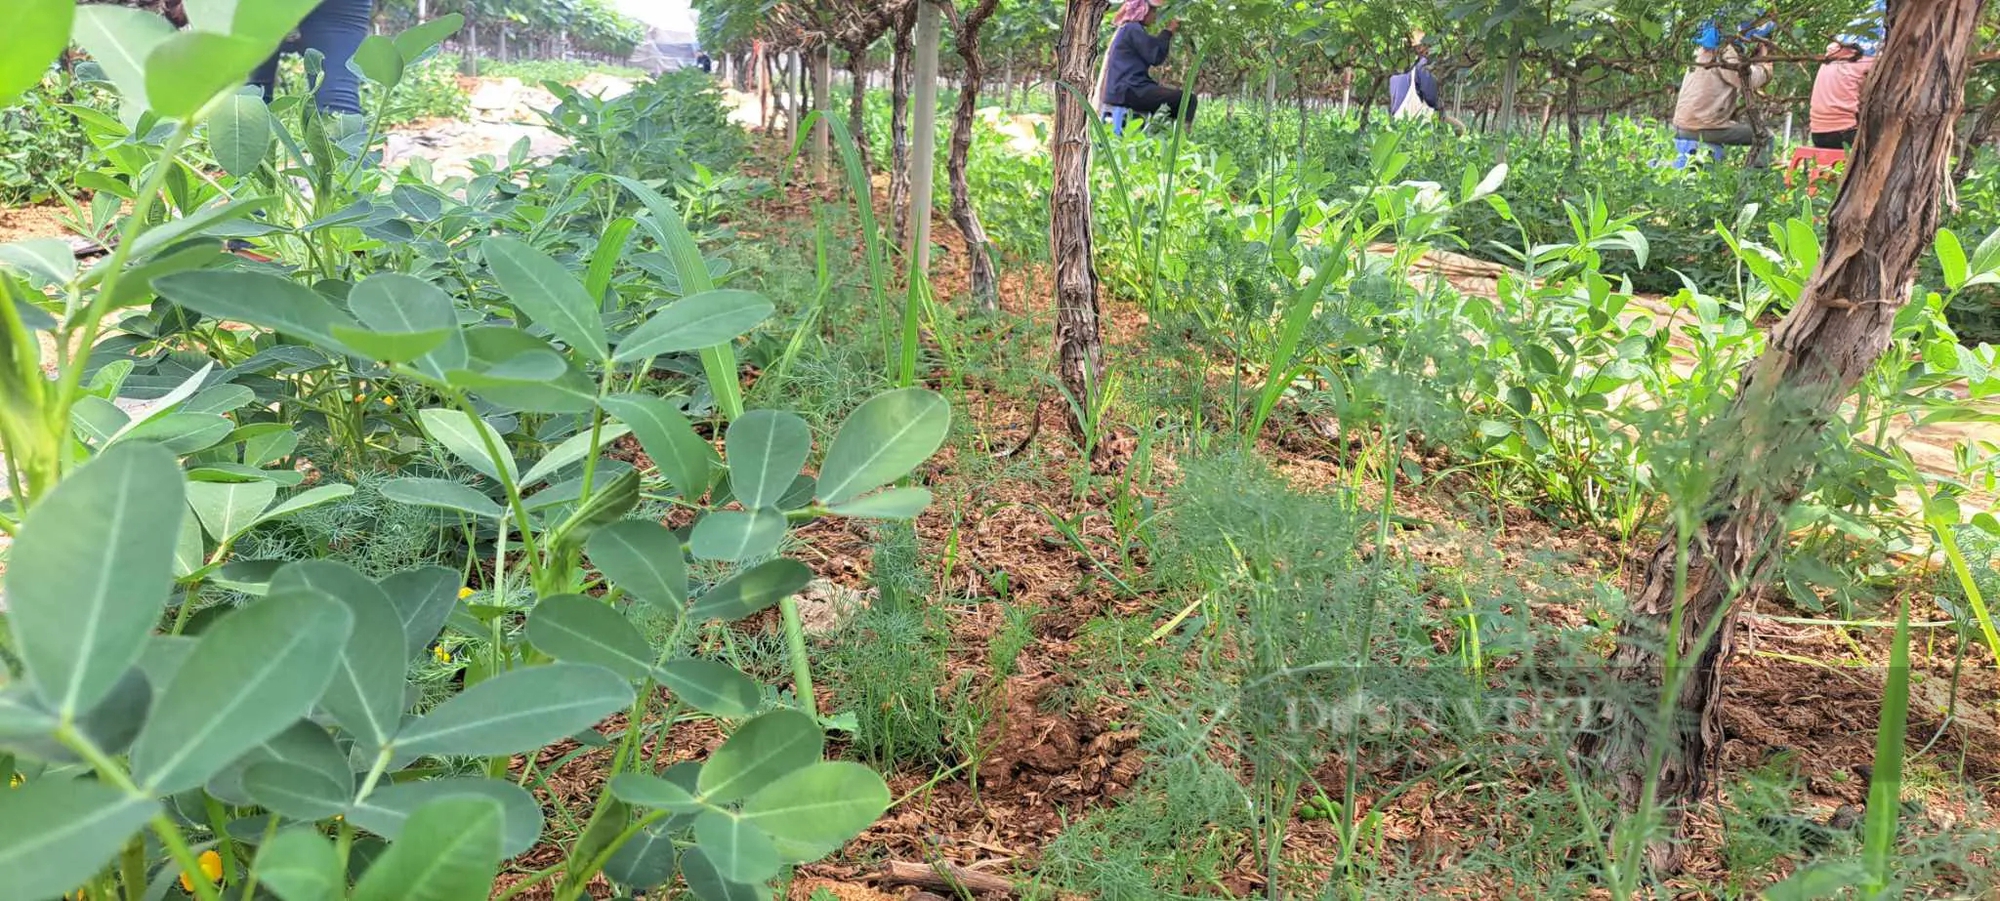 Trồng nho ở Sơn La kiểu gì mà vô vườn nhìn đâu cũng thấy trái, hái 150ha, nông dân "bỏ túi" bộn tiền- Ảnh 7.